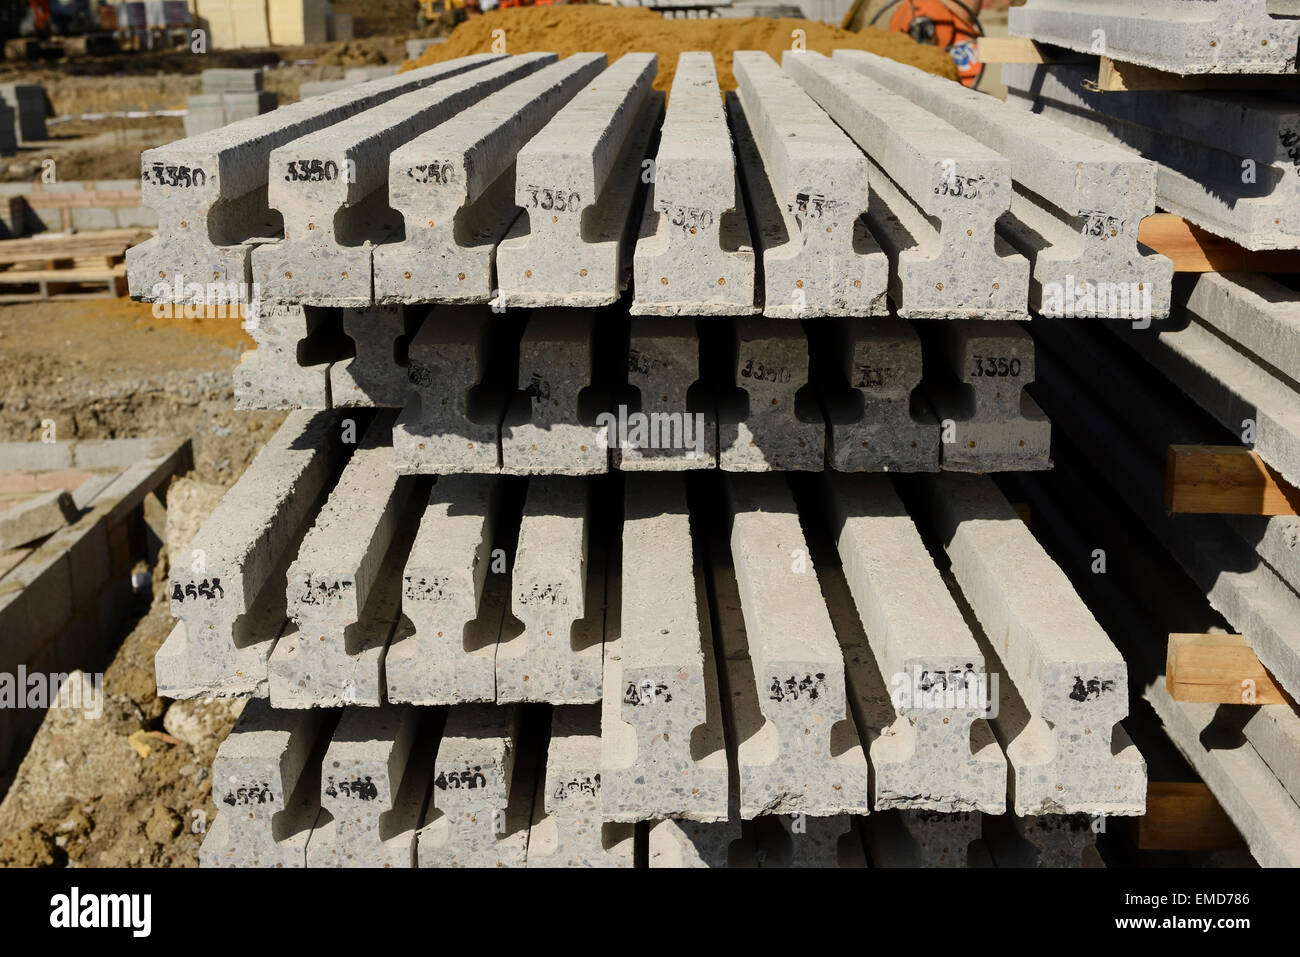 Les poutres en béton armé pour un faisceau et de bloquer sur un plancher UK construction site Banque D'Images